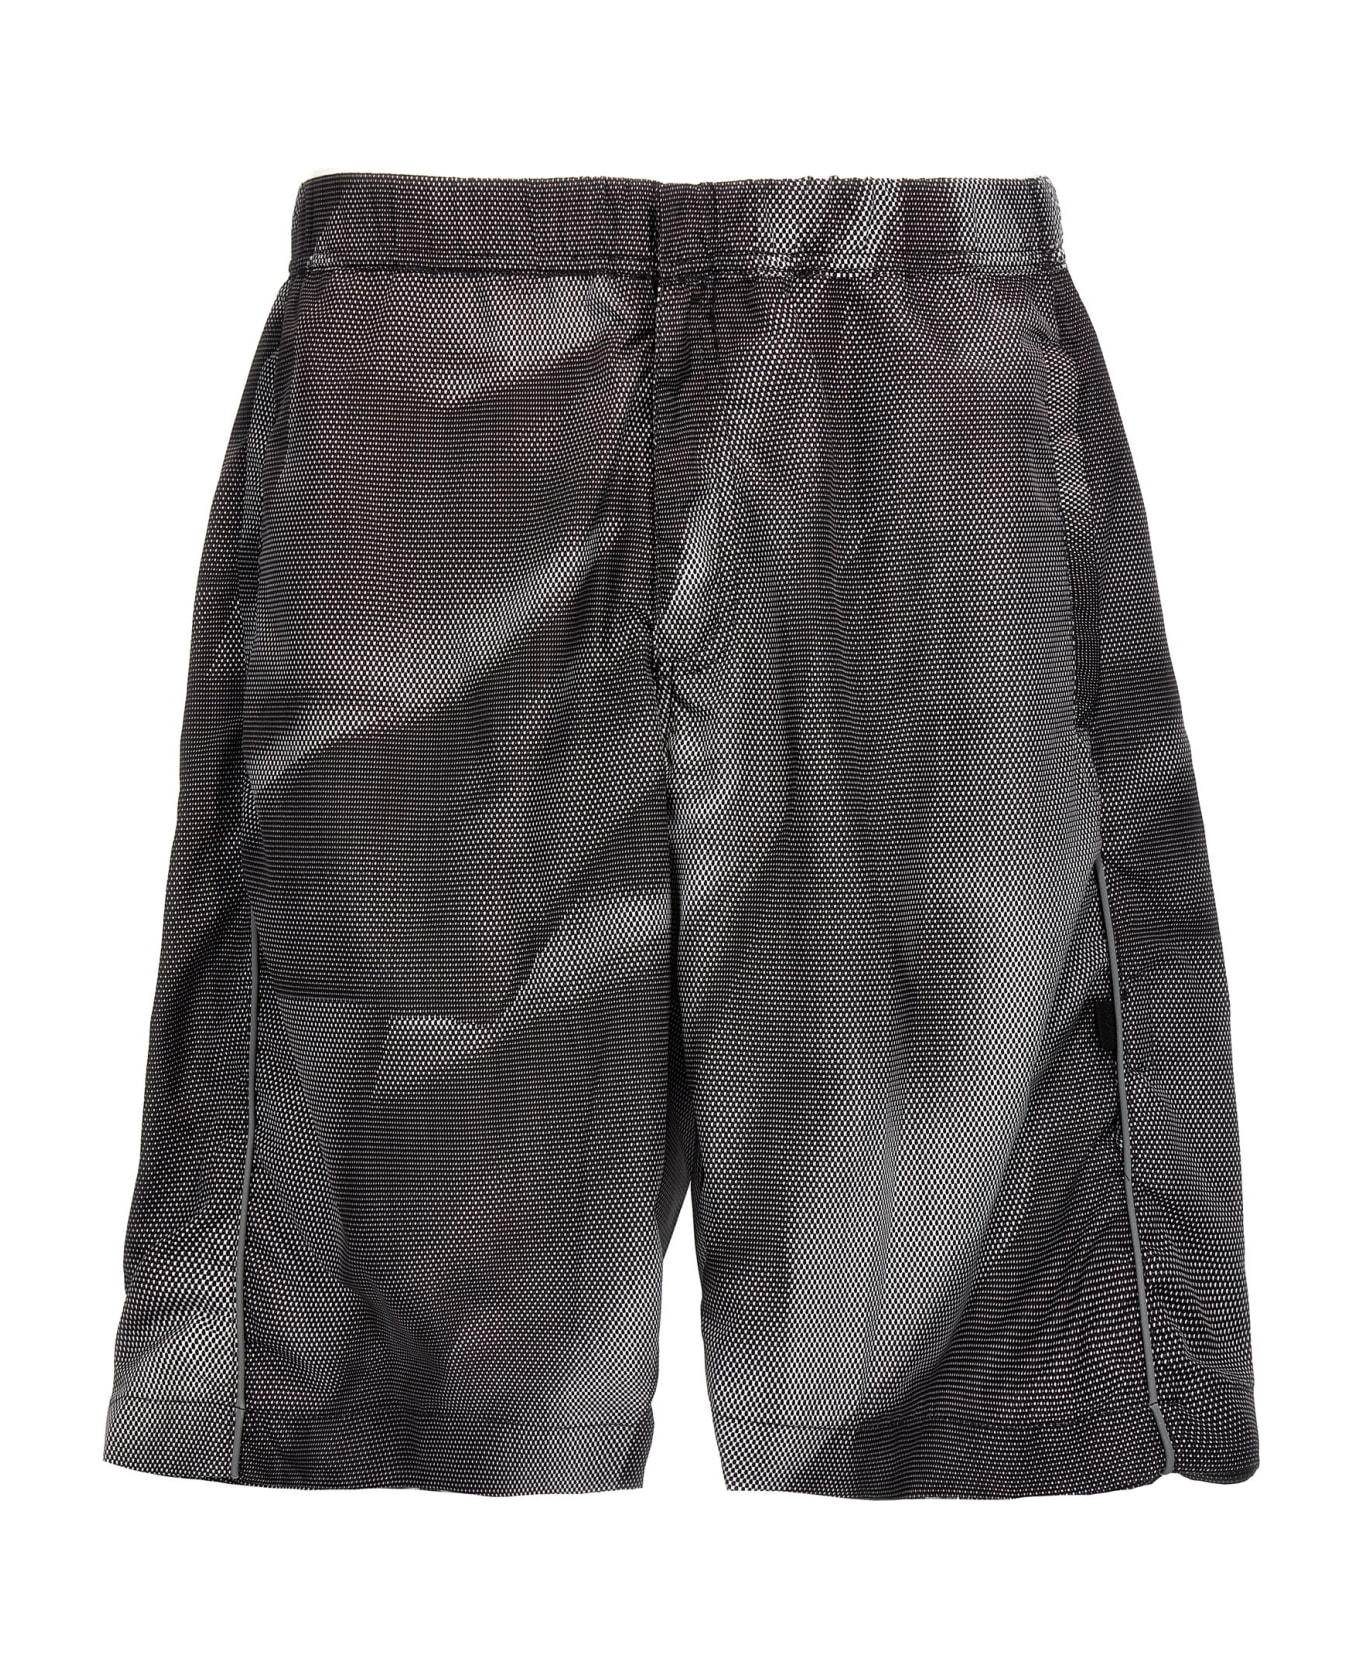 44 Label Group 'crinkle' Bermuda Shorts - Black ショートパンツ